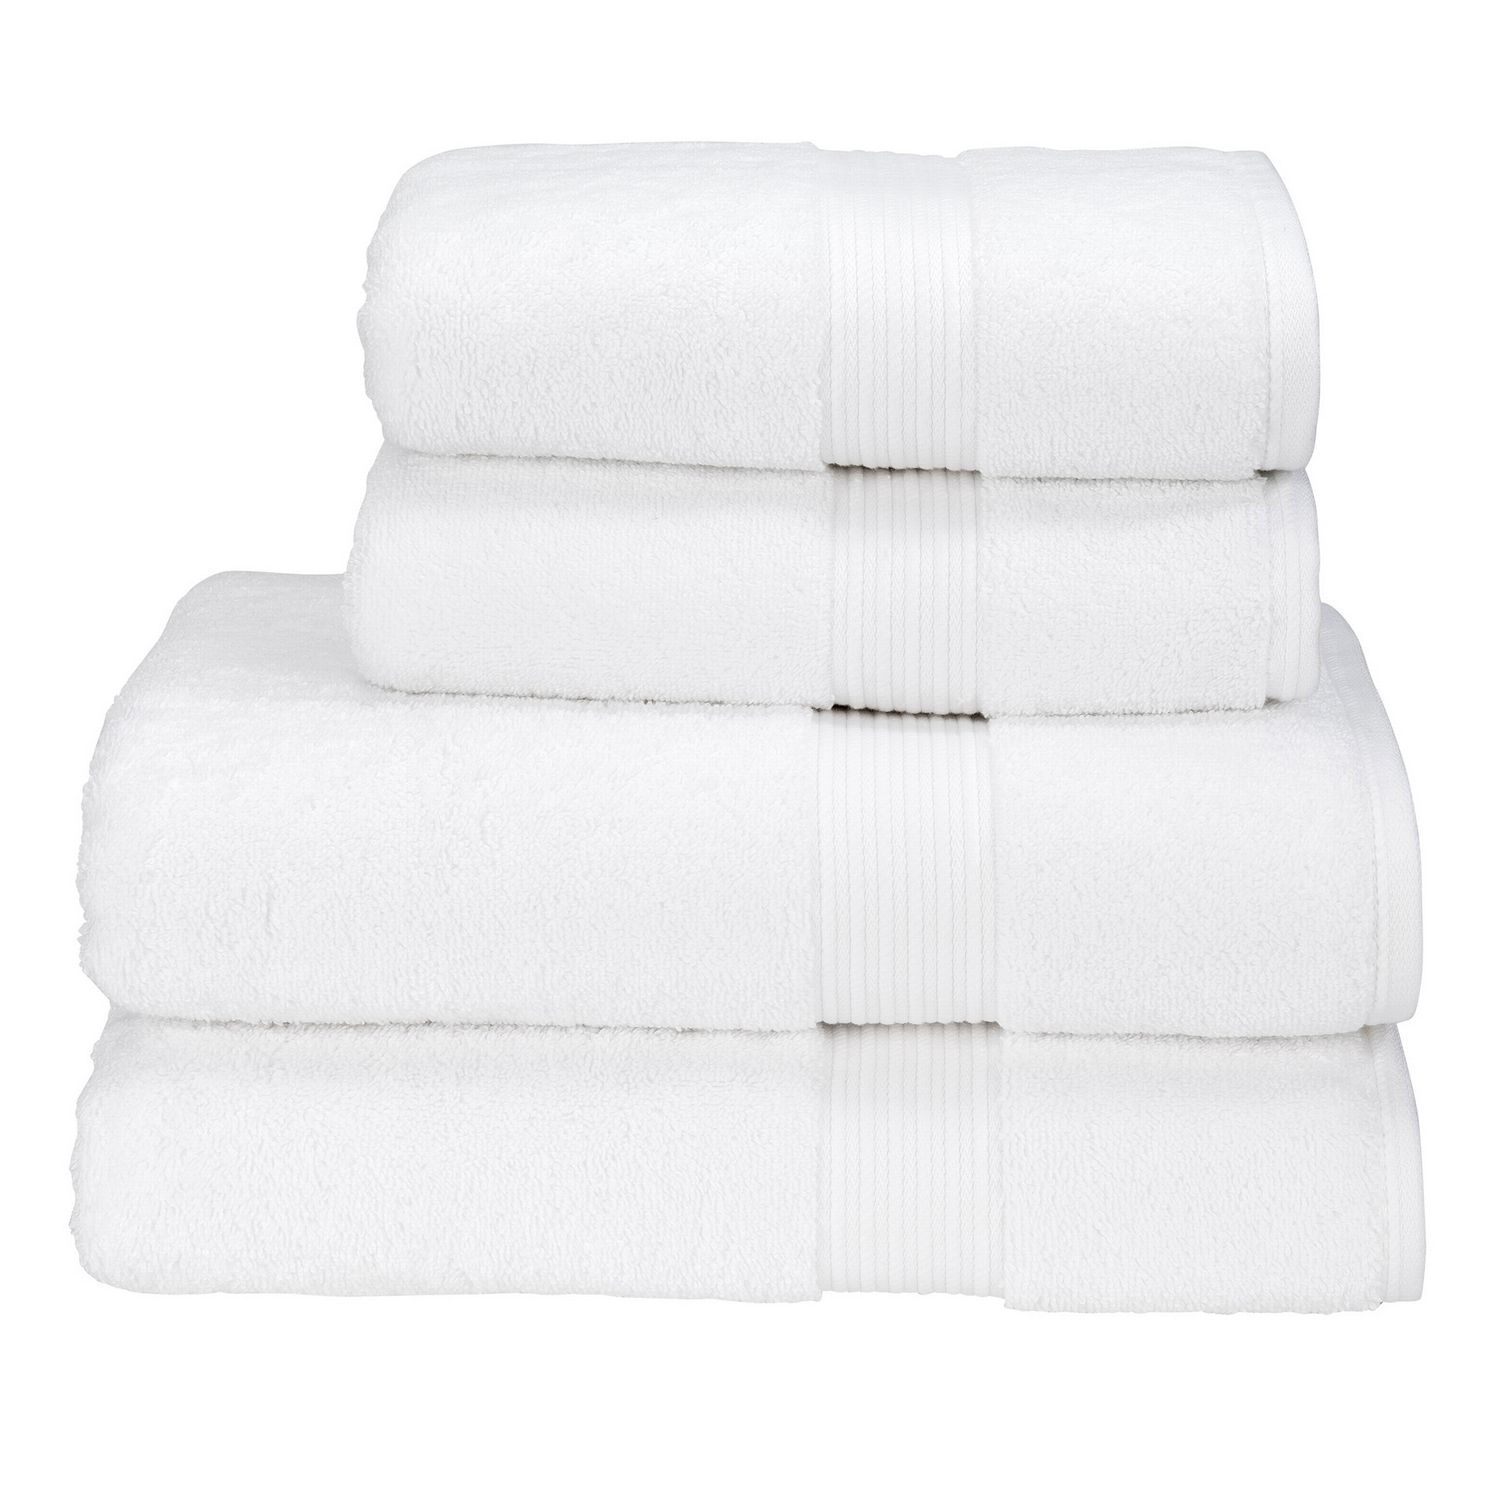 https://www.definingelegance.com/media/Christy-England/Supreme-Towels/Supreme-Towels-Hygro-White-L.jpg